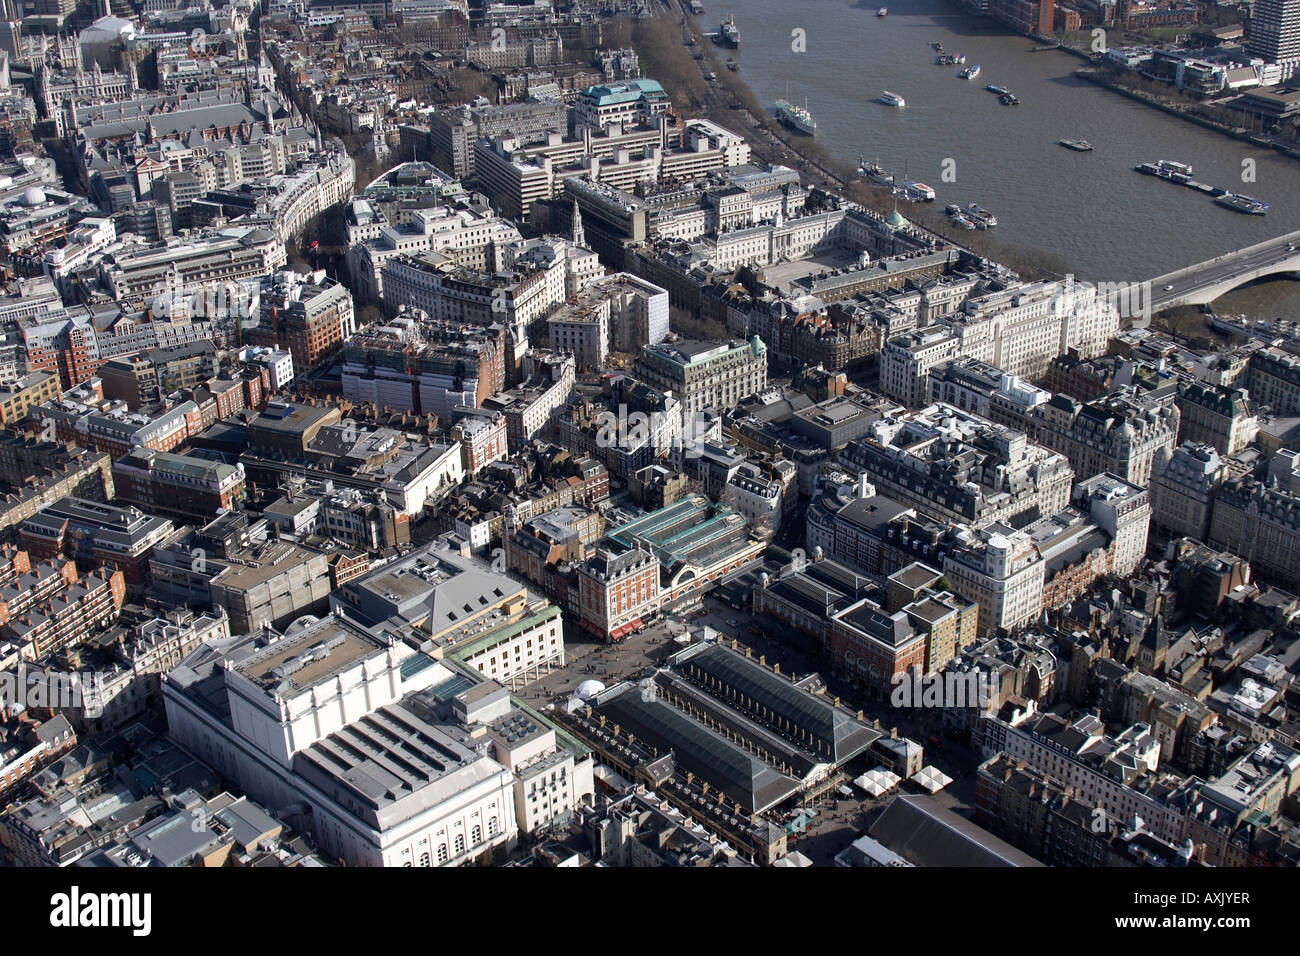 Vue aérienne oblique de haut niveau à l'est de Covent Garden et Aldwych London WC2 England UK Février 2006 Banque D'Images